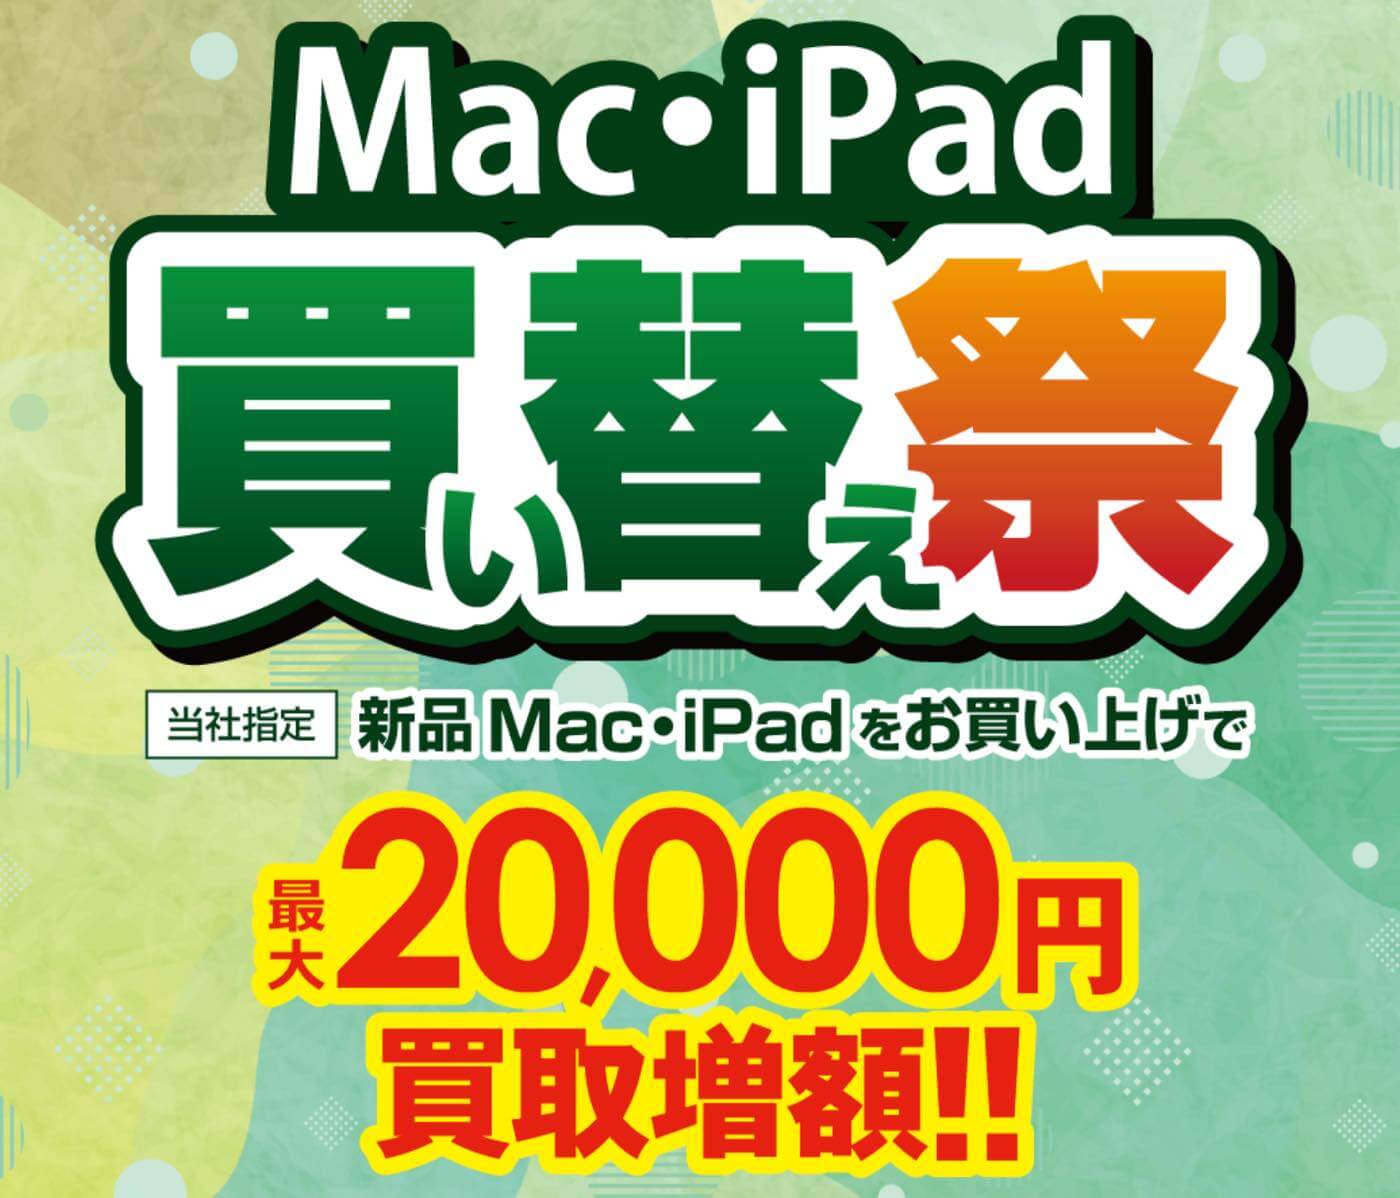 買取総合サービス｢ラクウル｣、MacとiPadの買い替え祭キャンペーンを実施中 ｰ 買取額を最大2万円増額